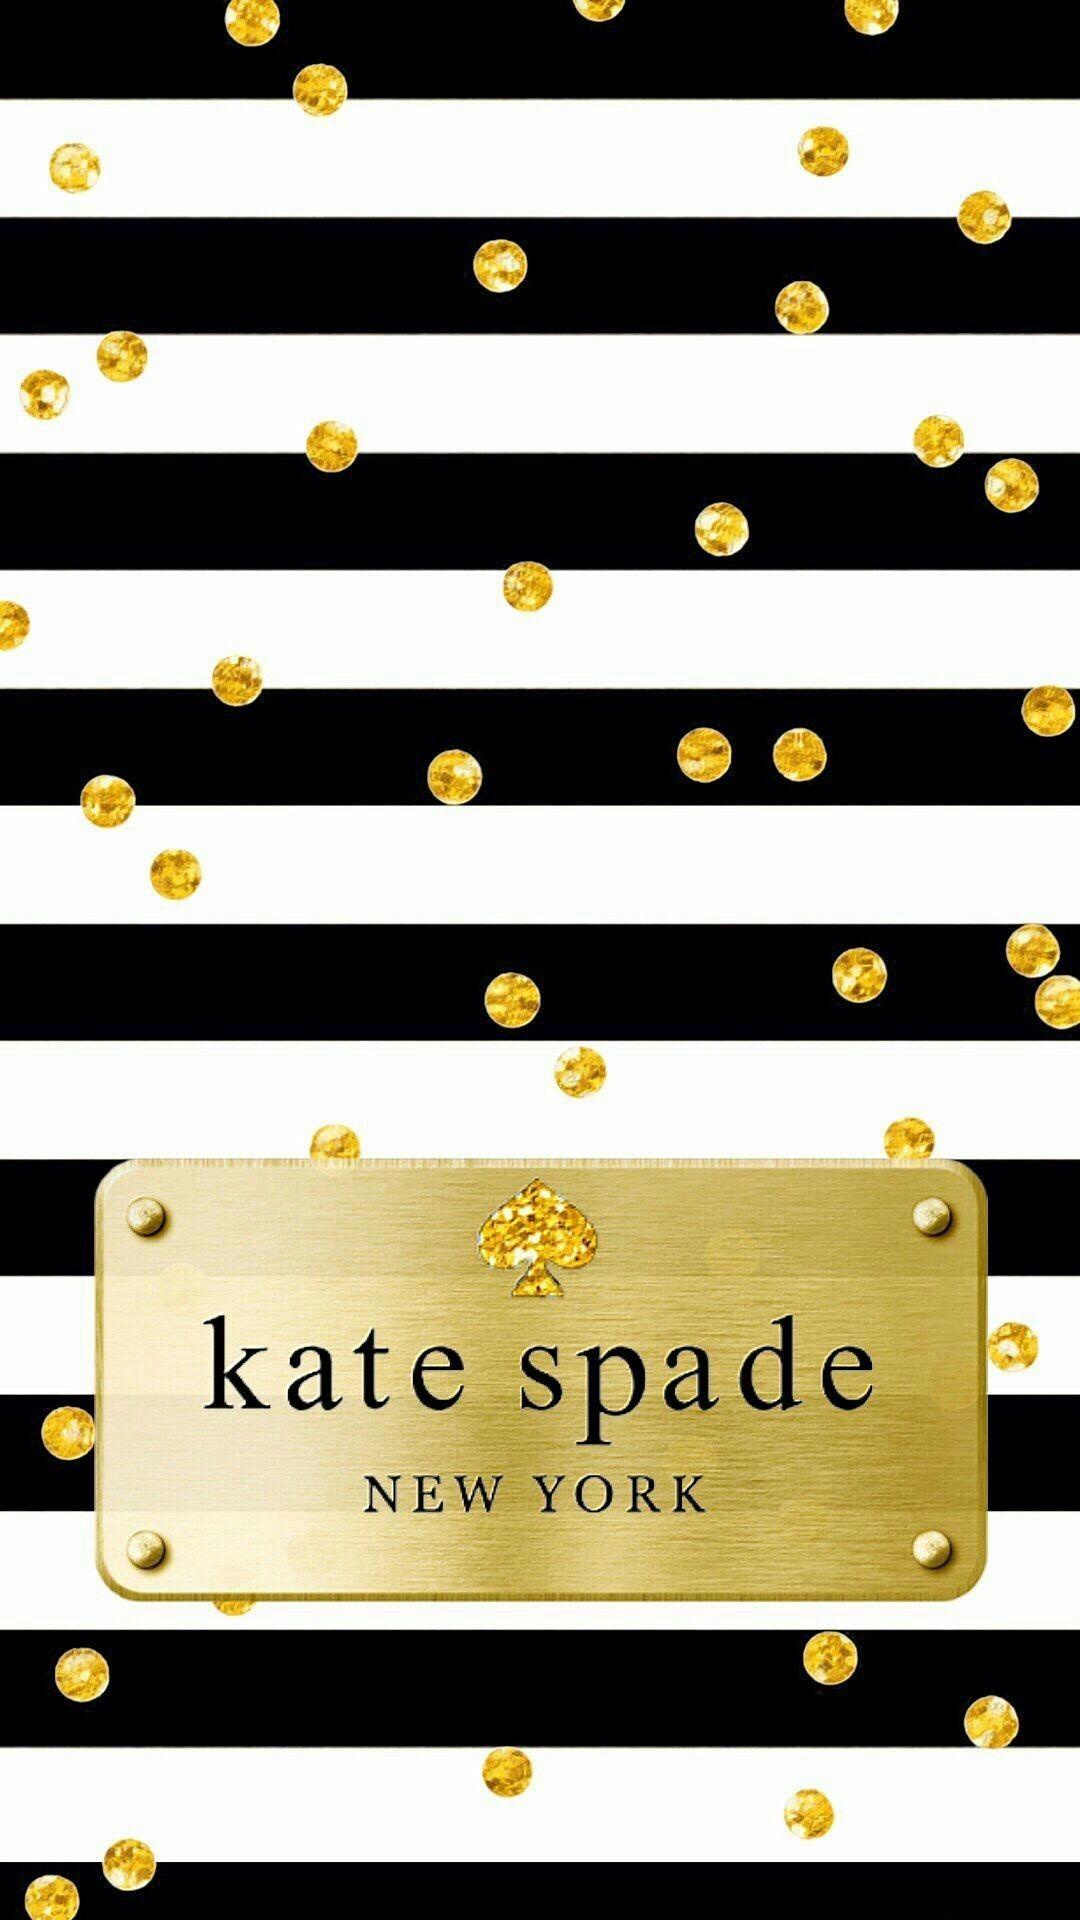 Kate Spade Iphone Wallpaper   ClipArt Best  ClipArt Best